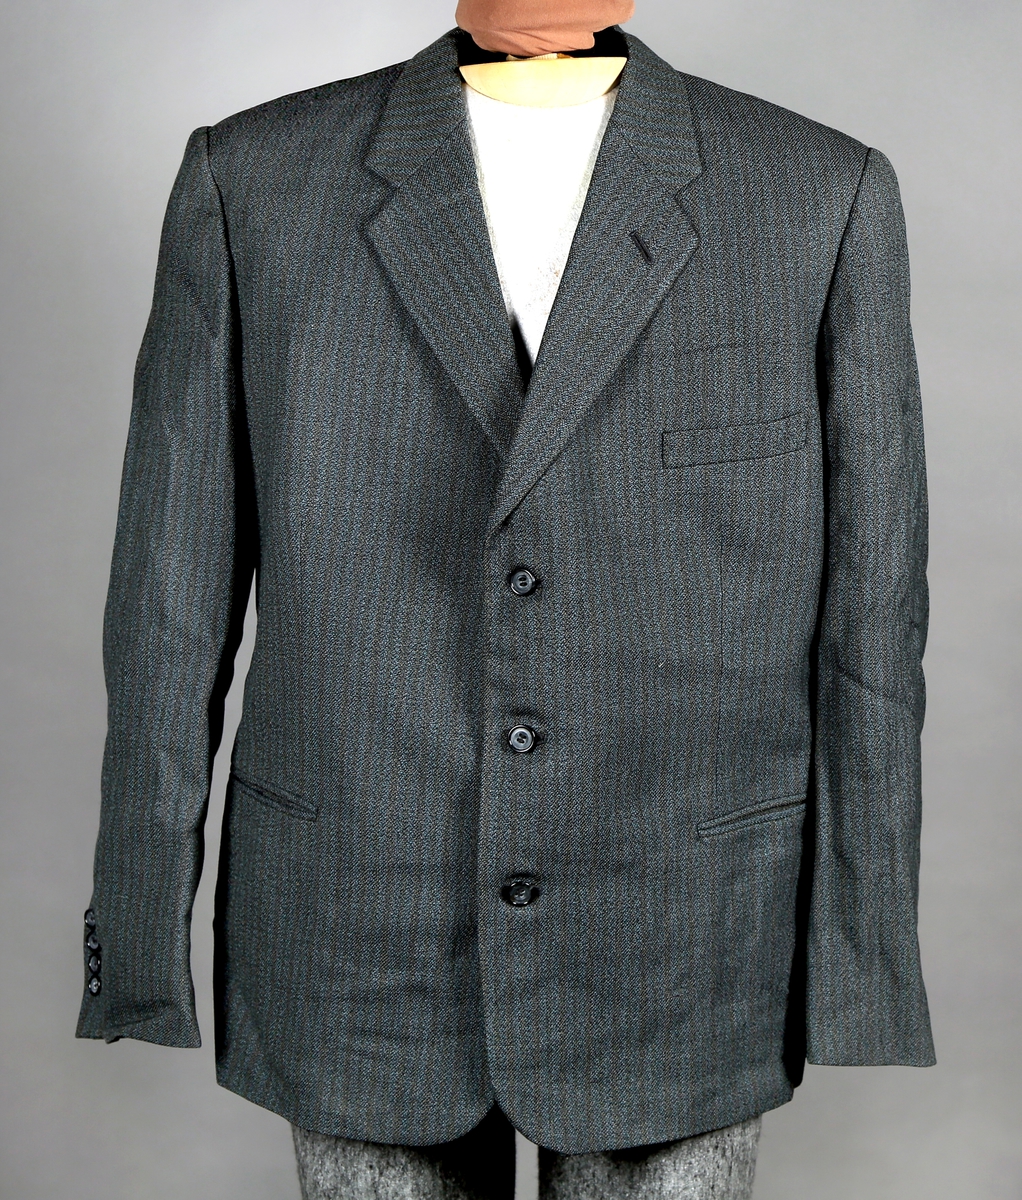 Dress med gråstripete mønster i stoffet, enkelt spennet jakke som kneppes med tre knapper. Jakka er silkefôret, unntatt ermene. Bukse med fire lommer. 